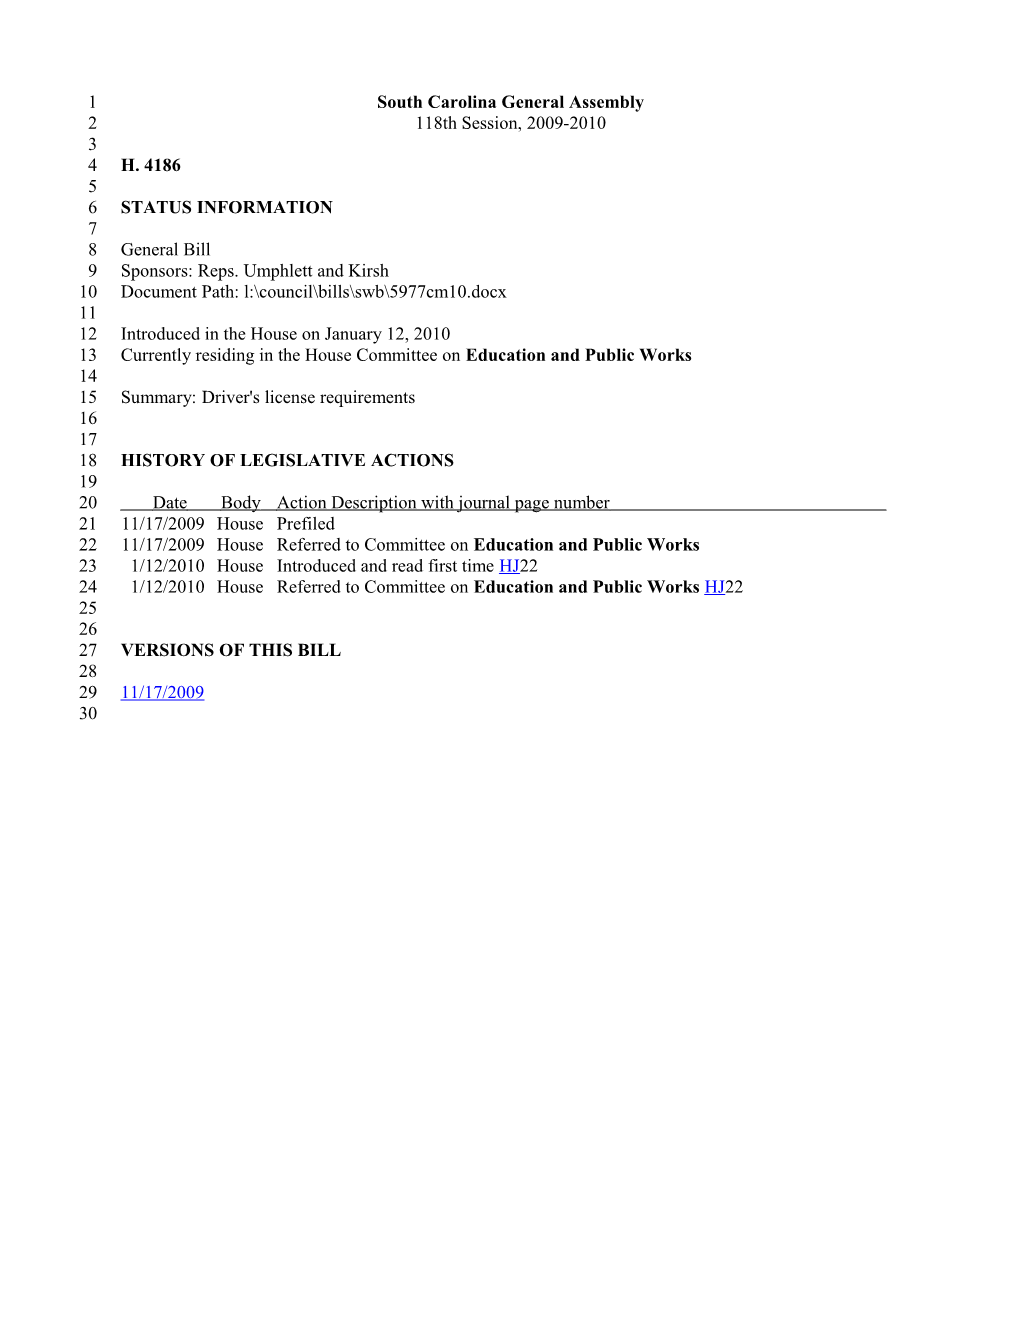 2009-2010 Bill 4186: Driver's License Requirements - South Carolina Legislature Online